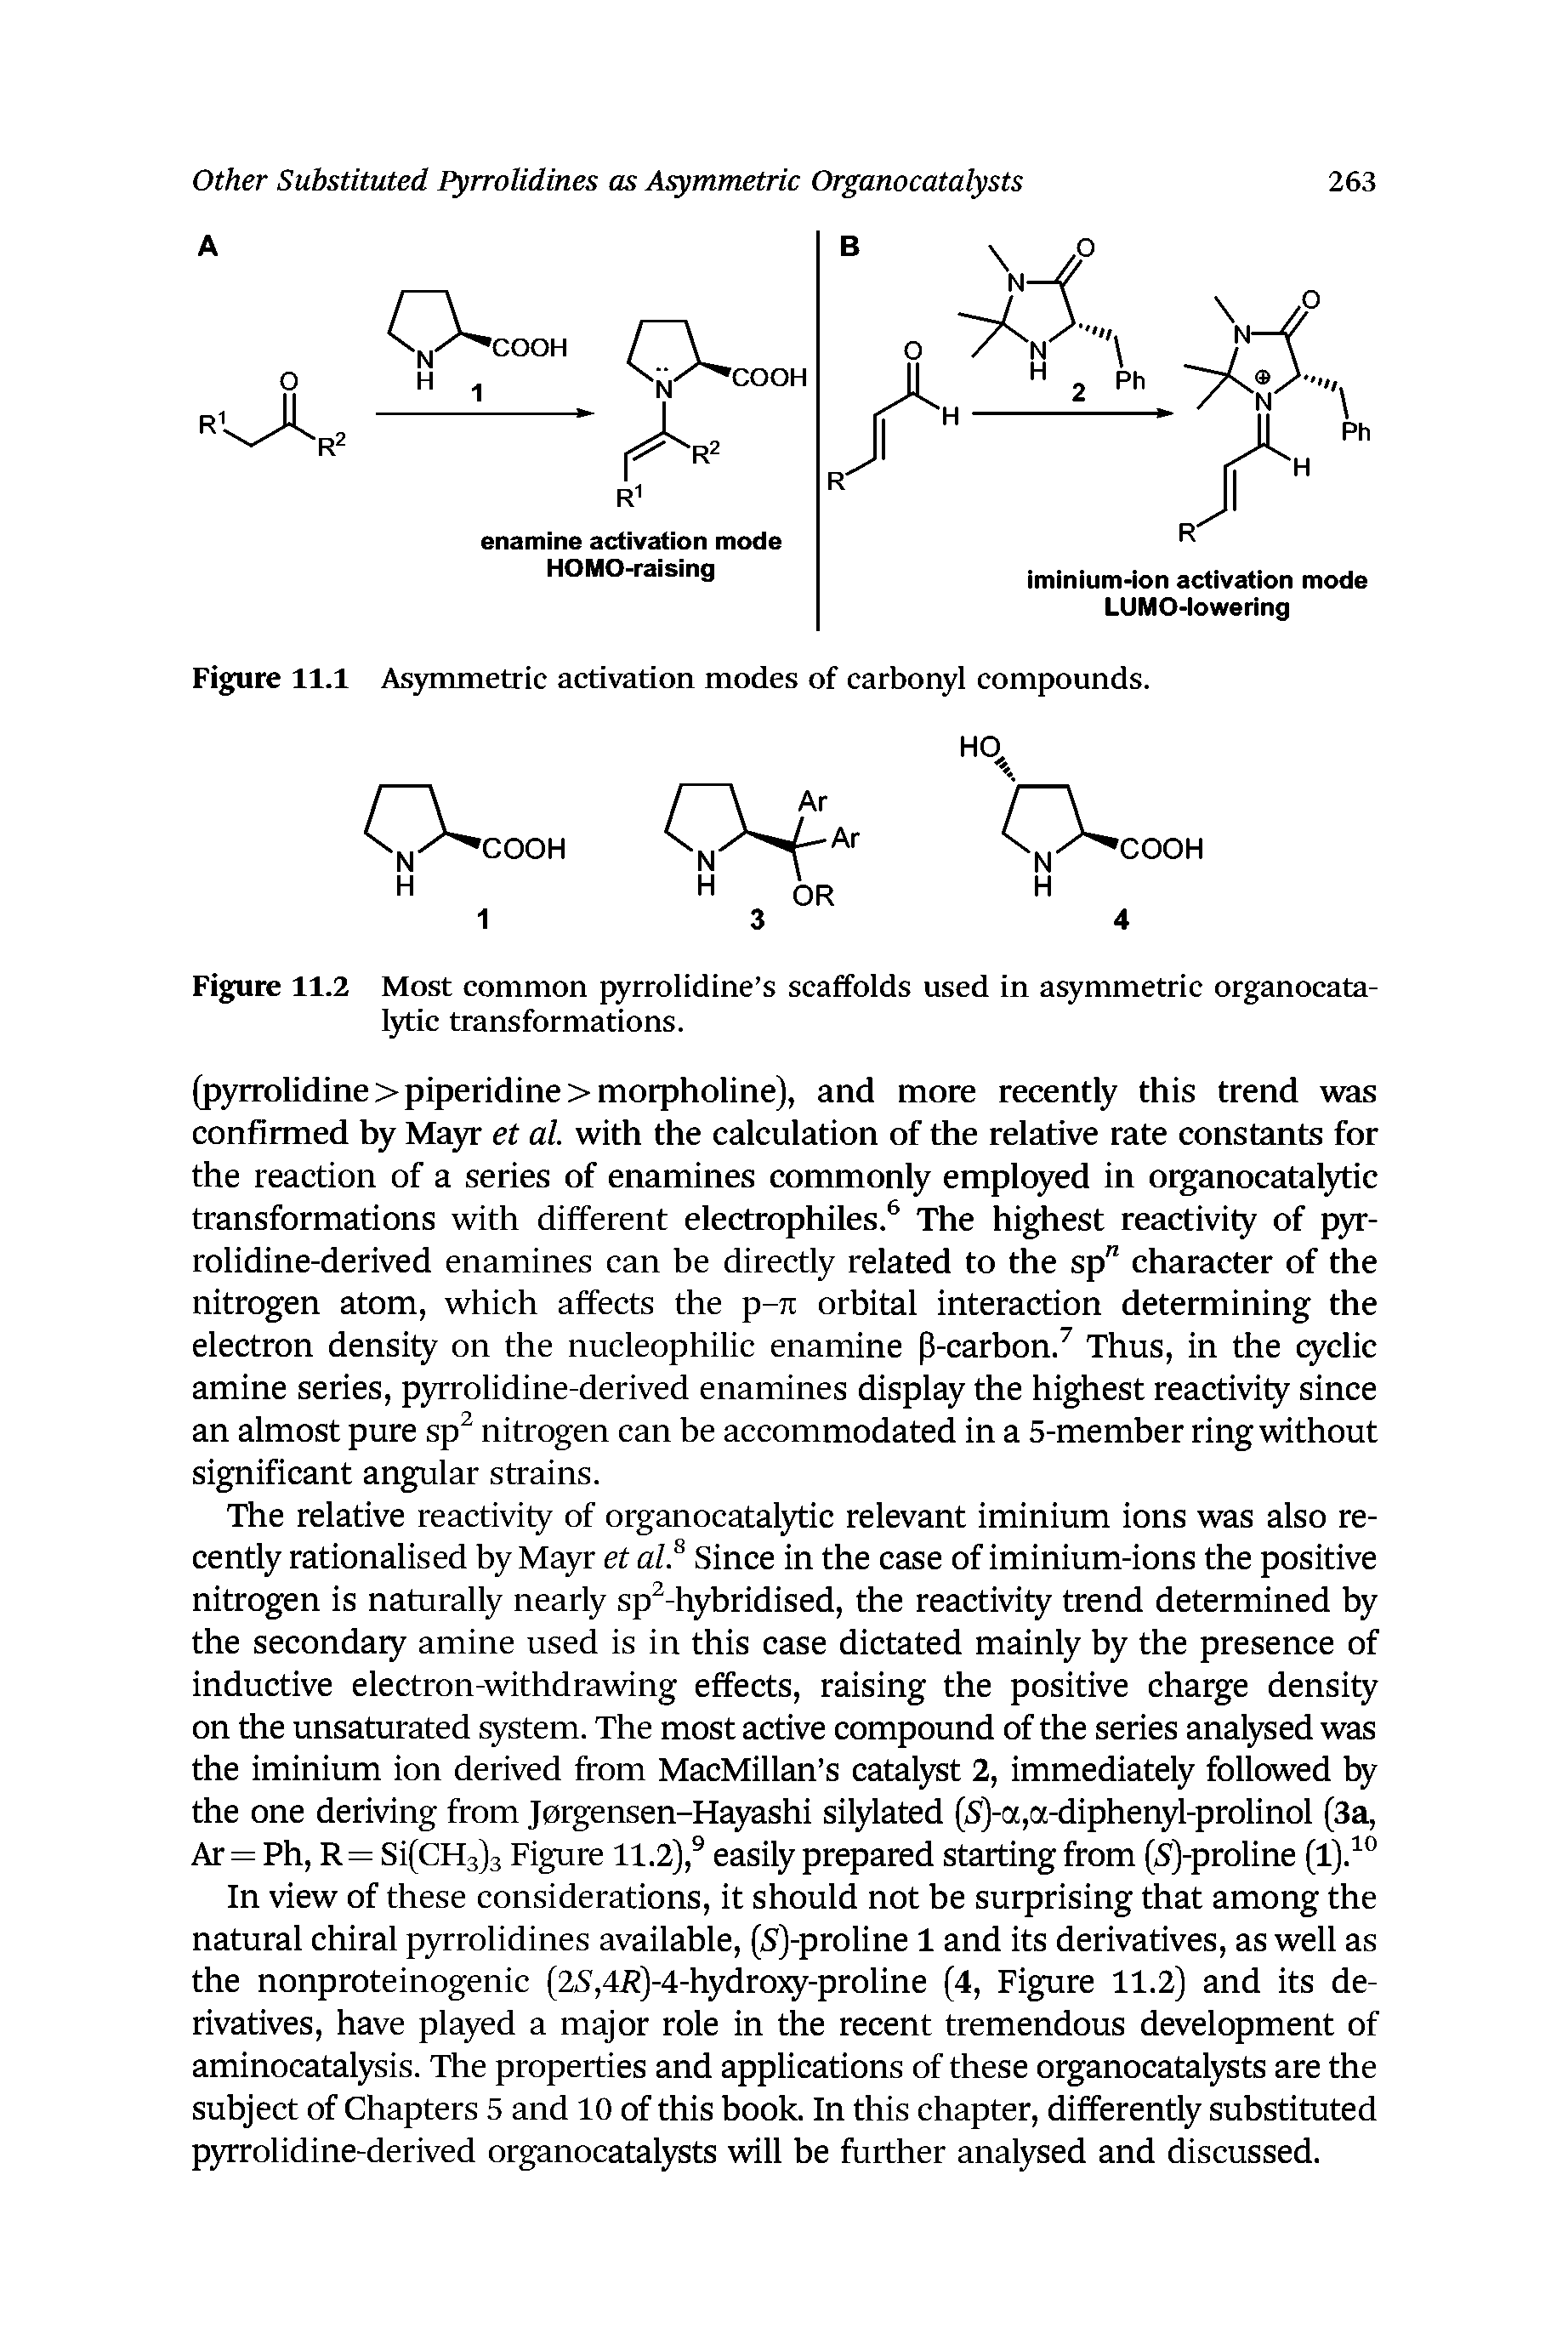 Figure 11.1 Asymmetric activation modes of carbonyl compounds.